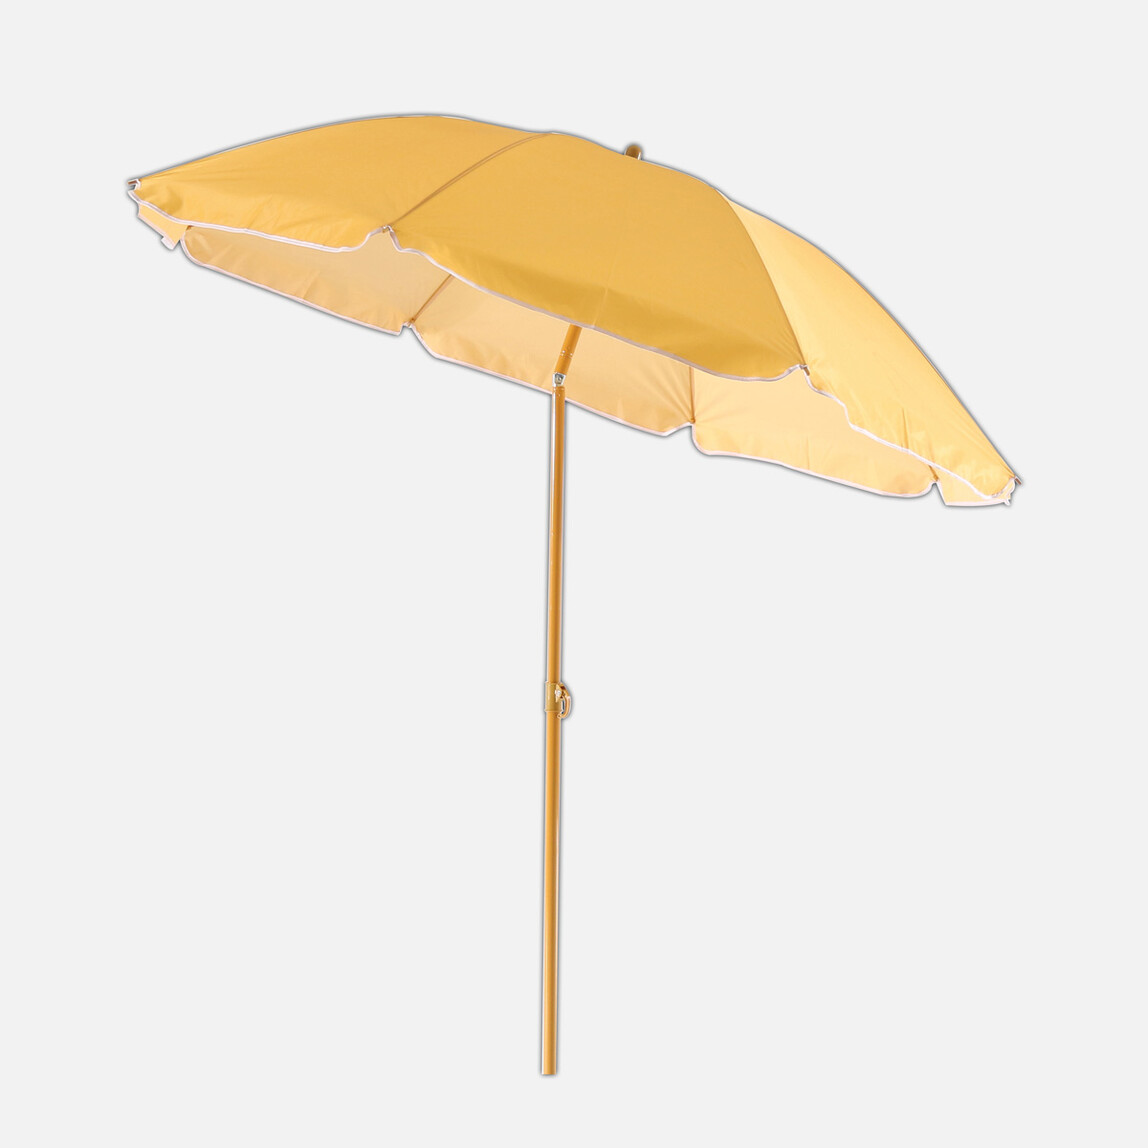    Sunfun Şemsiye Sarı 180 cm  